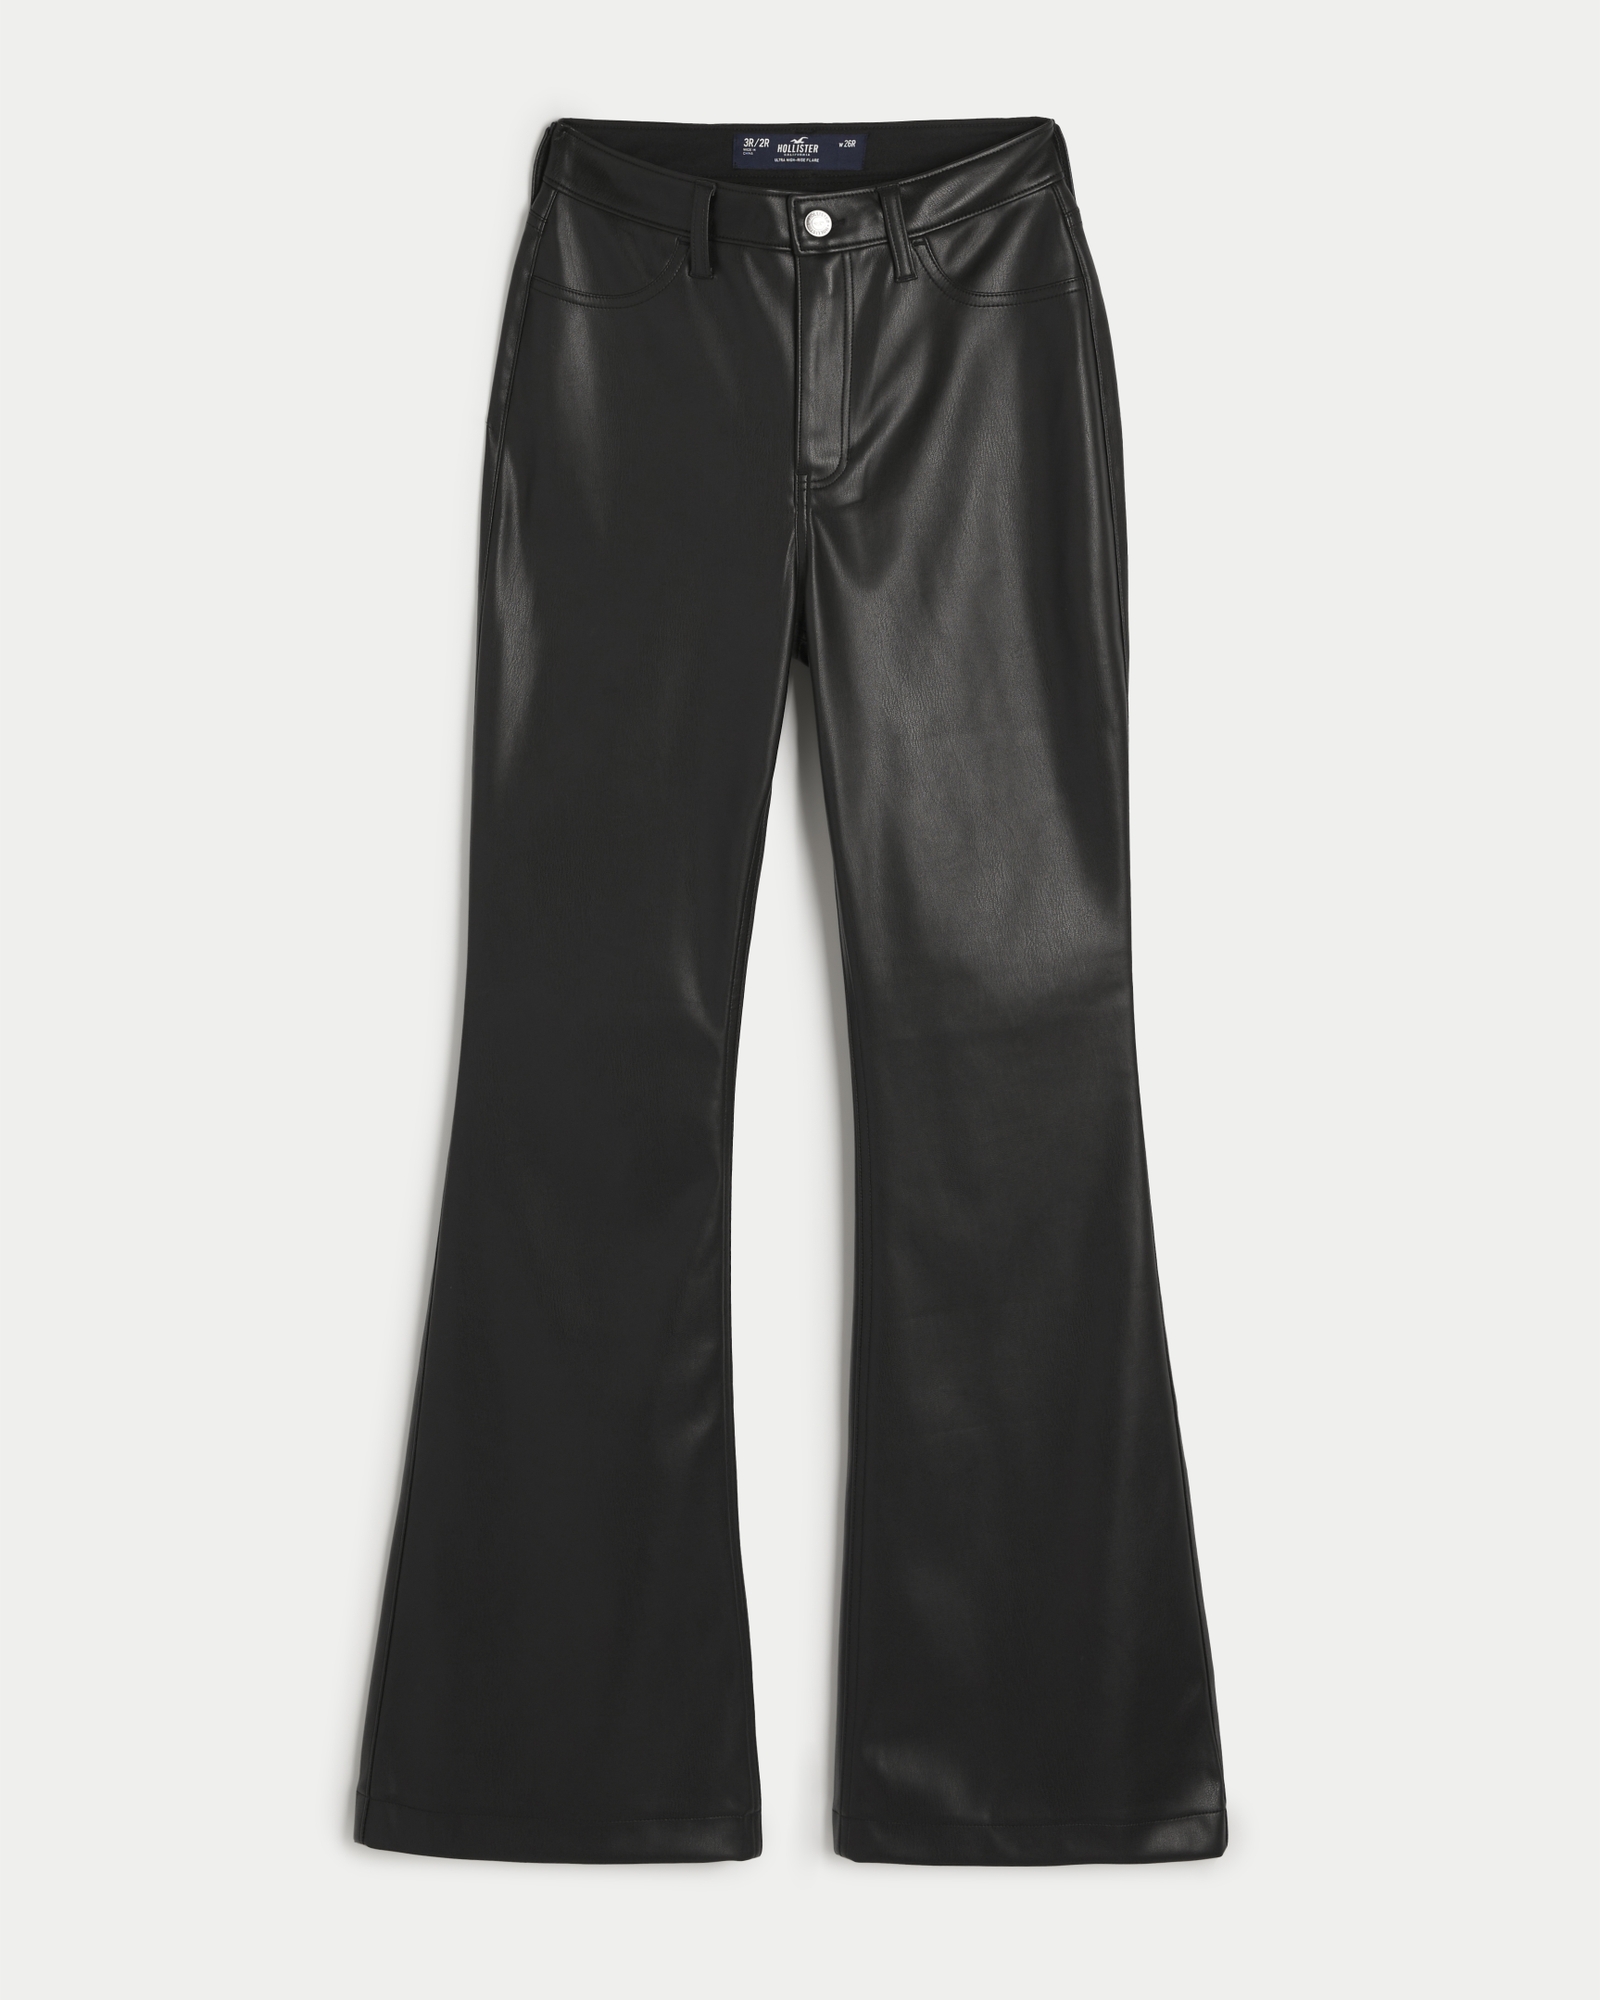 NWT HOLLISTER BLACK LEATHER PANTS SPLIT HEM  Black leather pants, Leather  pants, Clothes design